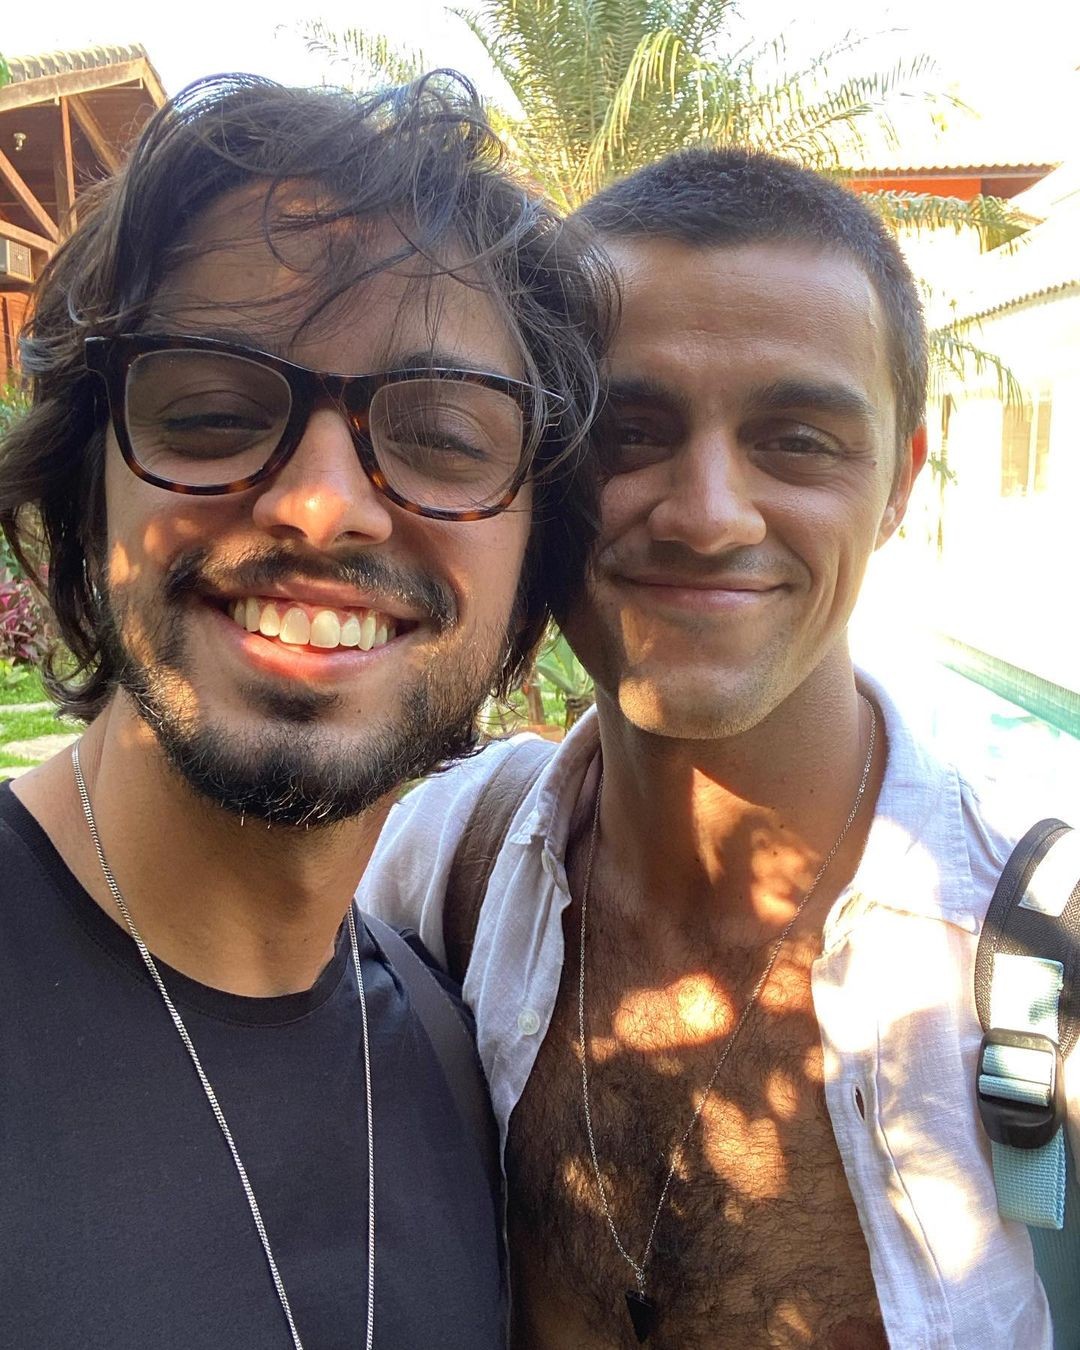 Irmãos Simas posam para selfie e Rodrigo brinca: "Meu irmão mais novo, que é mais velho" (Foto: Reprodução/Instagram)